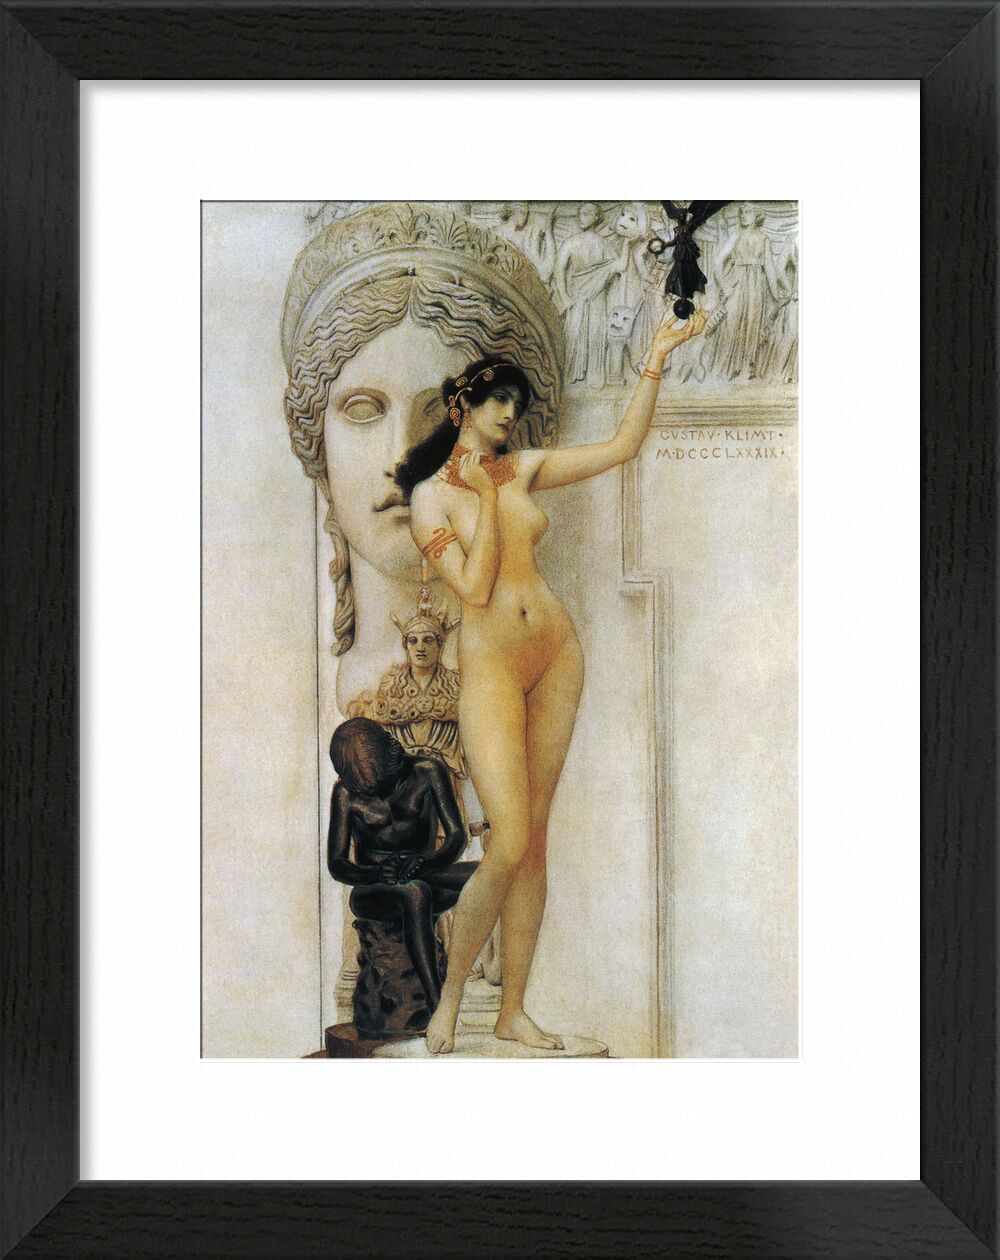 Allegory of Sculpture - Gustav Klimt von Bildende Kunst, Prodi Art, KLIMT, Skulptur, Frau, nackt, Statue, römisch, Allegorie